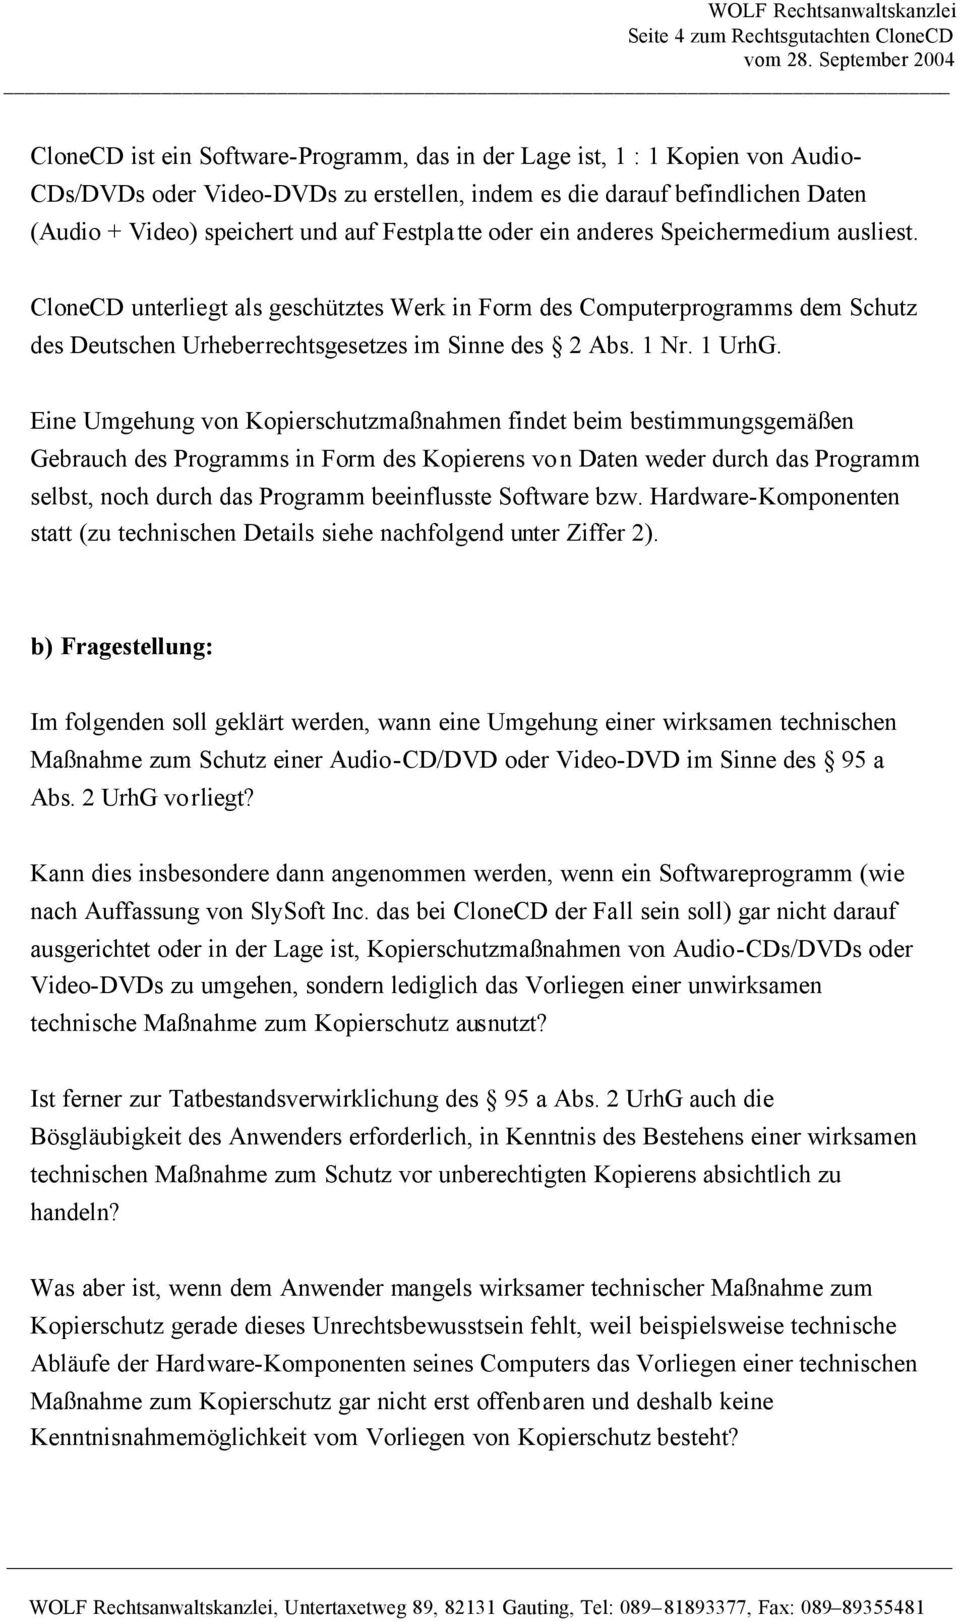 CloneCD unterliegt als geschütztes Werk in Form des Computerprogramms dem Schutz des Deutschen Urheberrechtsgesetzes im Sinne des 2 Abs. 1 Nr. 1 UrhG.